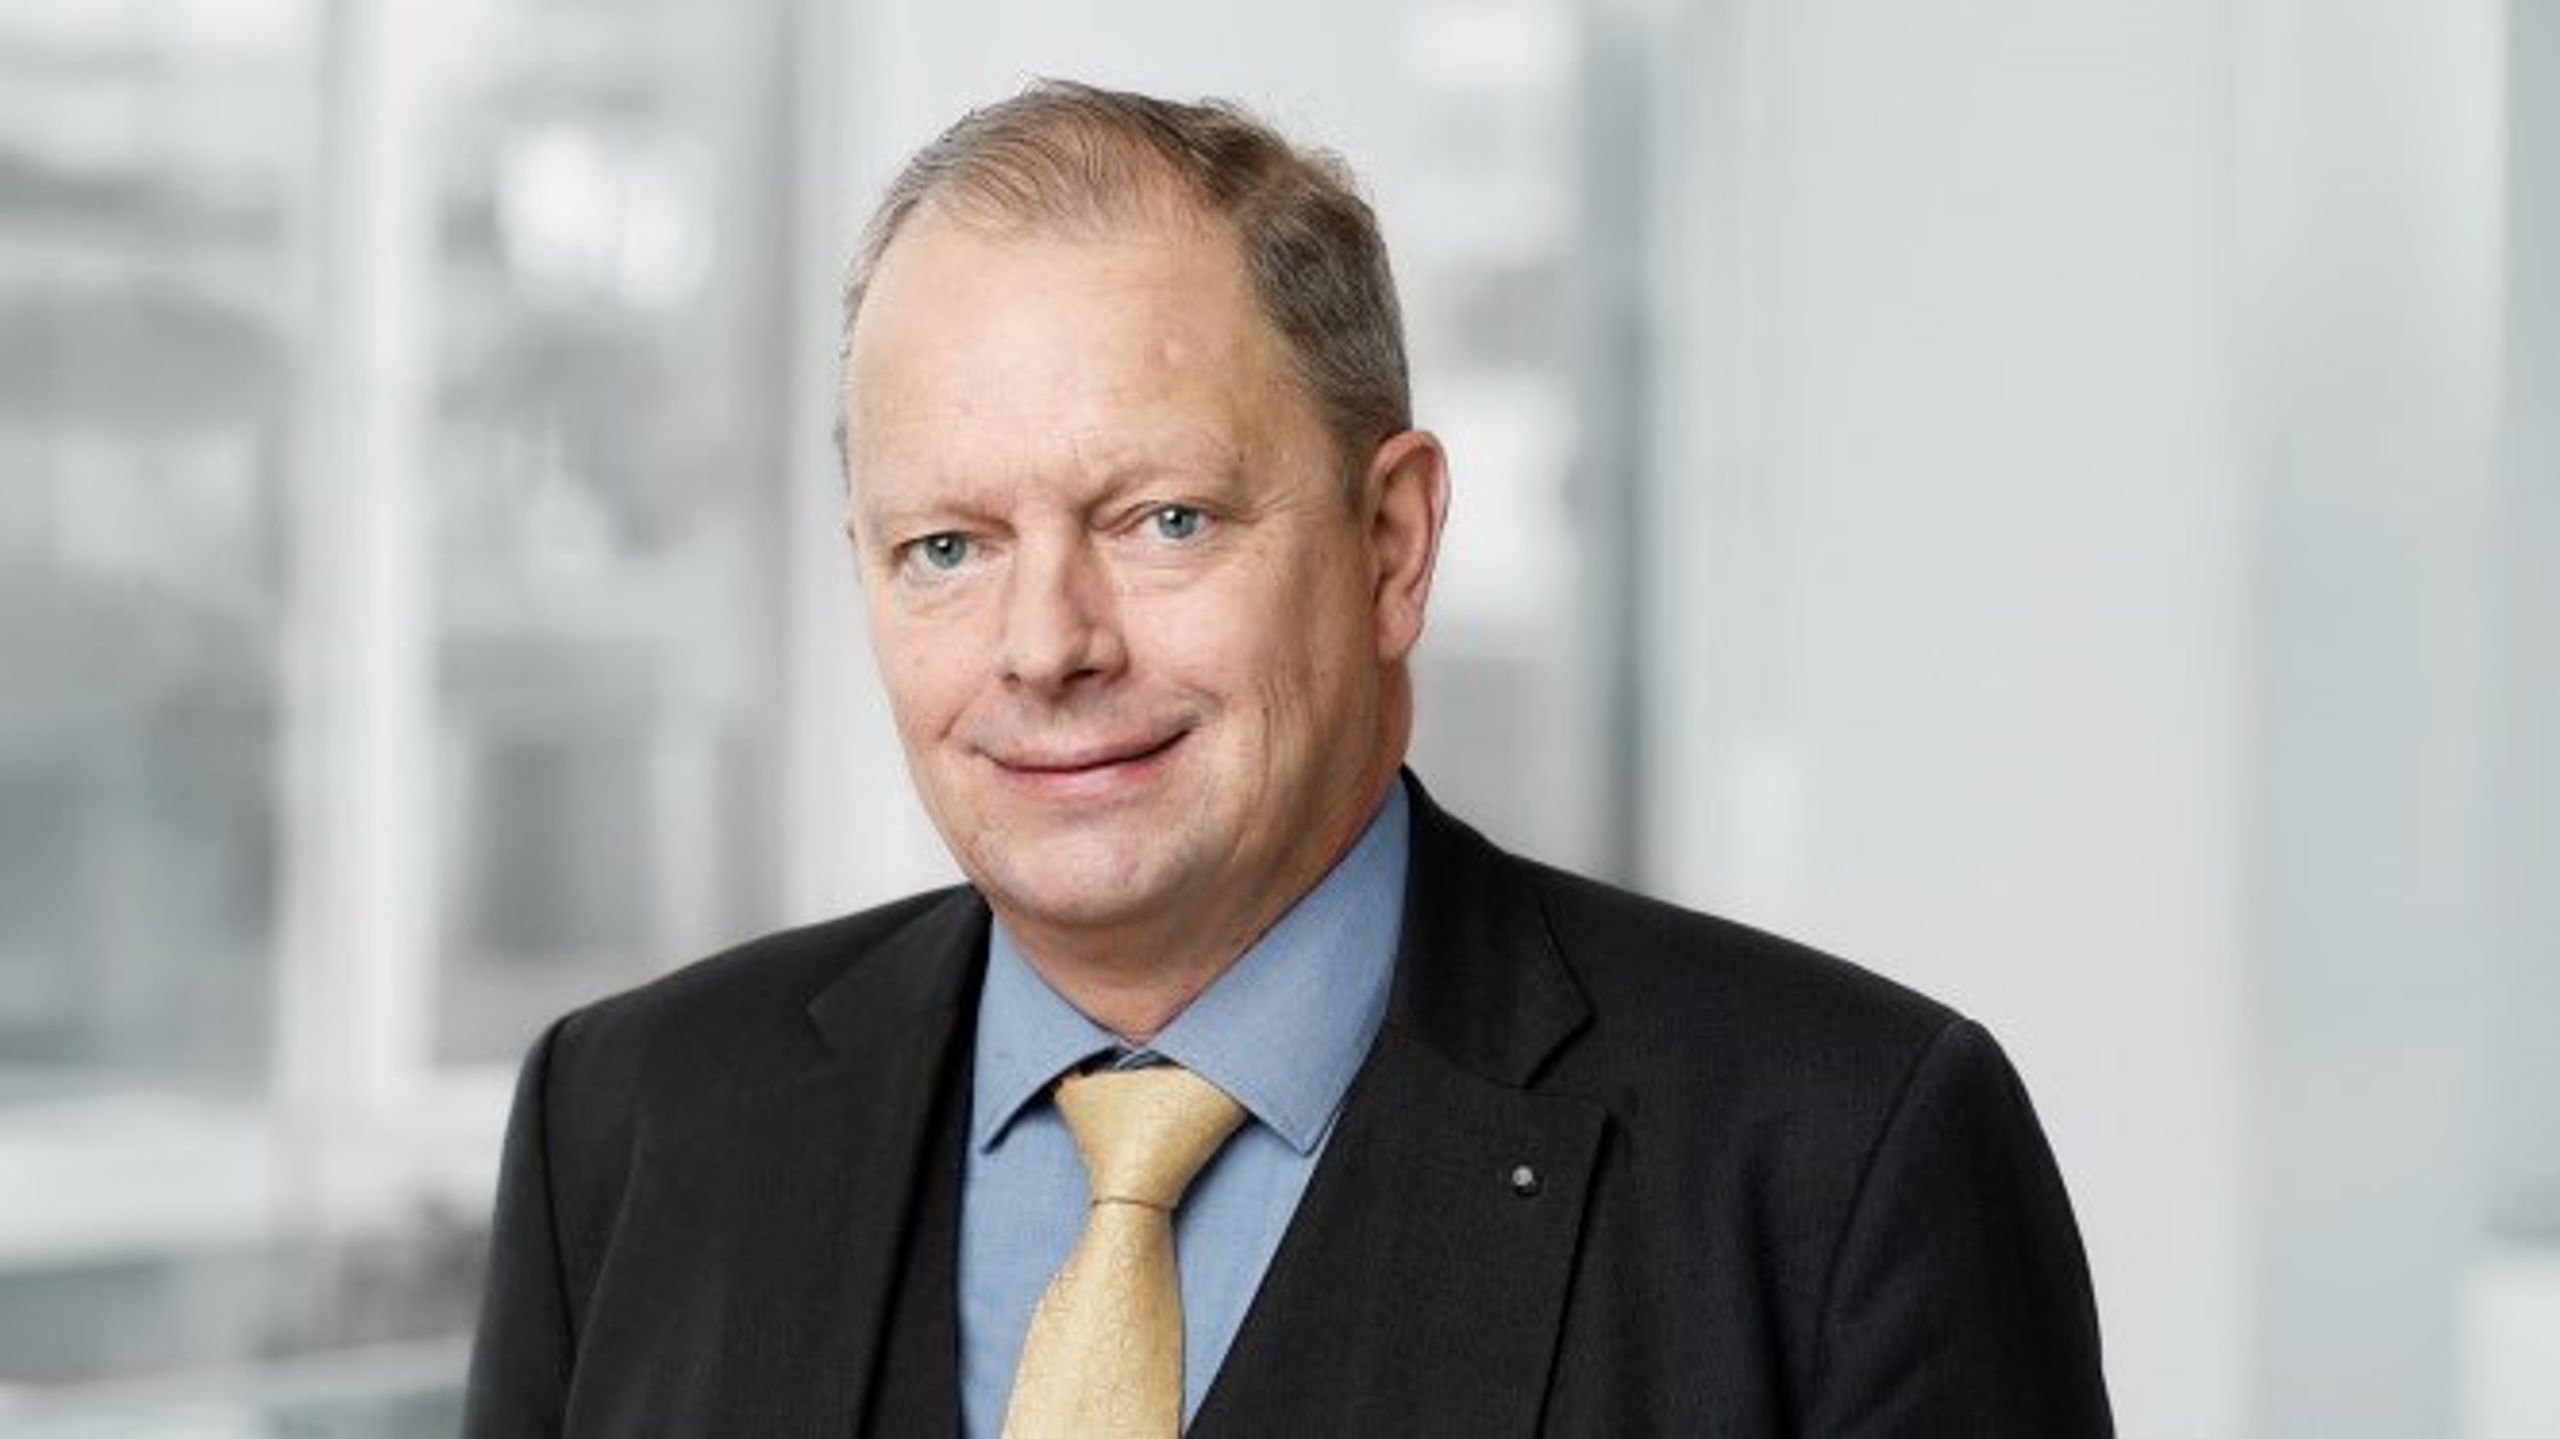 ”Om styrelsen har ansvaret, måste styrelsen också ha makten”, säger Tomas Kåberger, ledamot i Vattenfalls styrelse om den styrgrupp för bolaget som Tidöpartierna håller på att tillsätta.